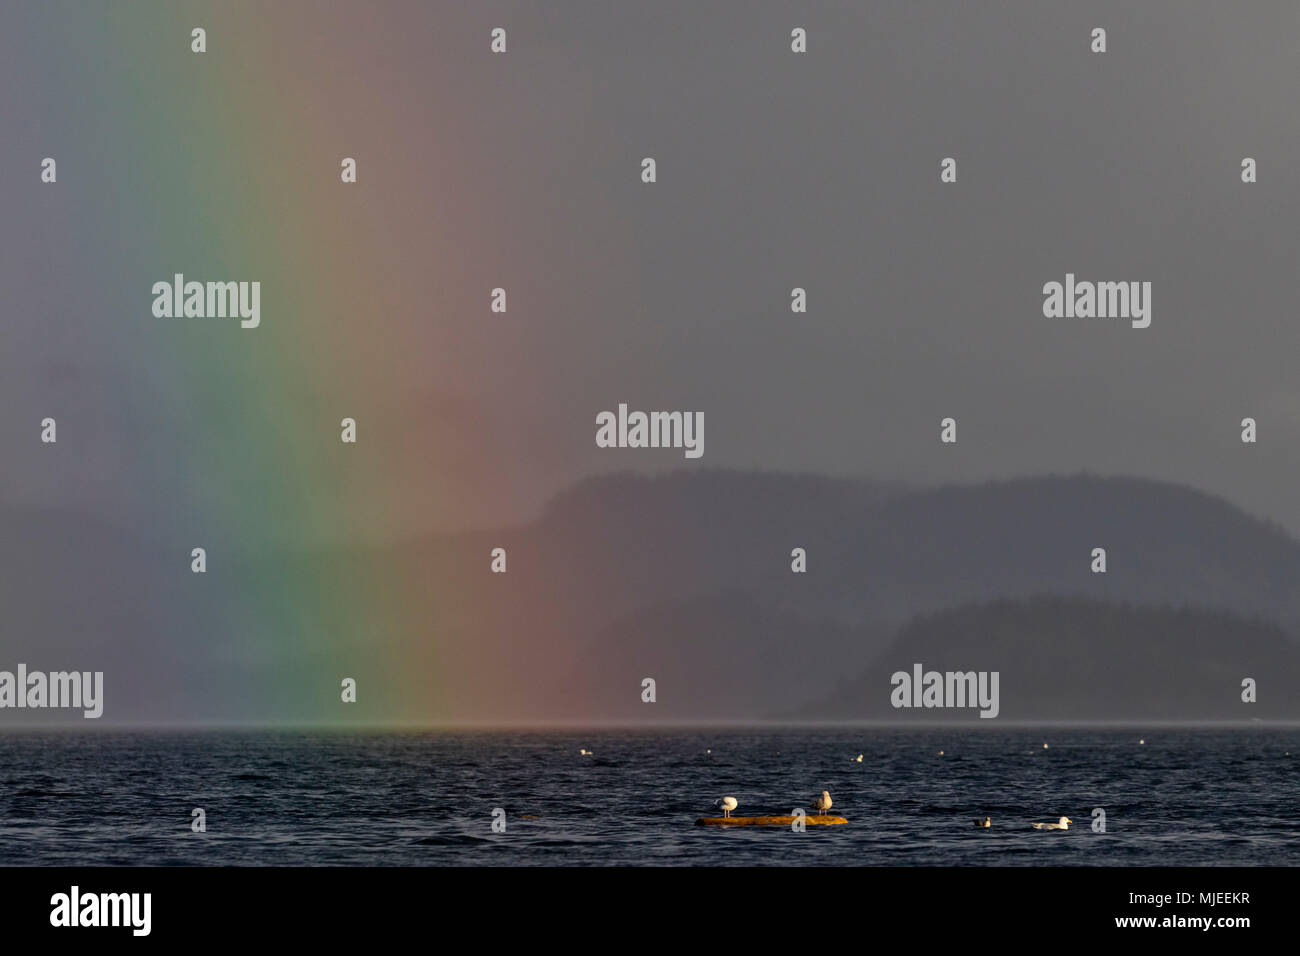 Las gaviotas sentado en un registro bajo un hermoso arco iris en el estrecho Queen Charlotte fuera del norte de la isla de Vancouver, British Columbia, Canadá. Foto de stock